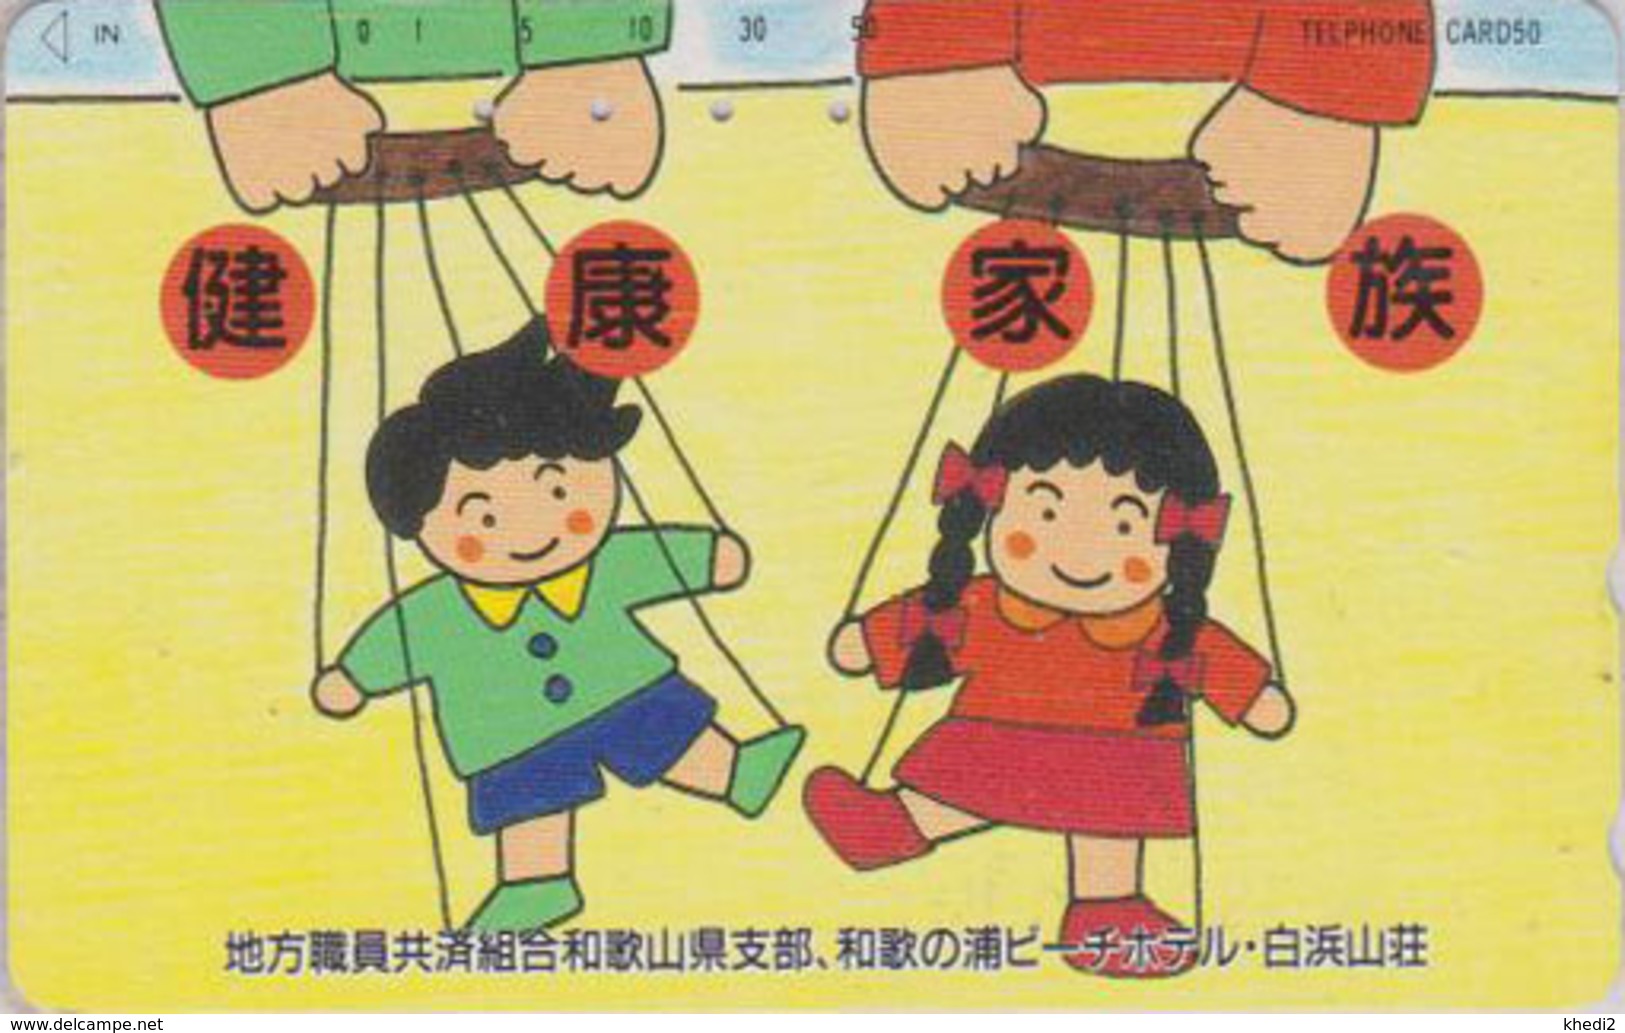 Télécarte Japon / 330-42519 - Jeu Jouet - MARIONNETTE - PUPPET Game Toy Japan Phonecard - 222 - Jeux